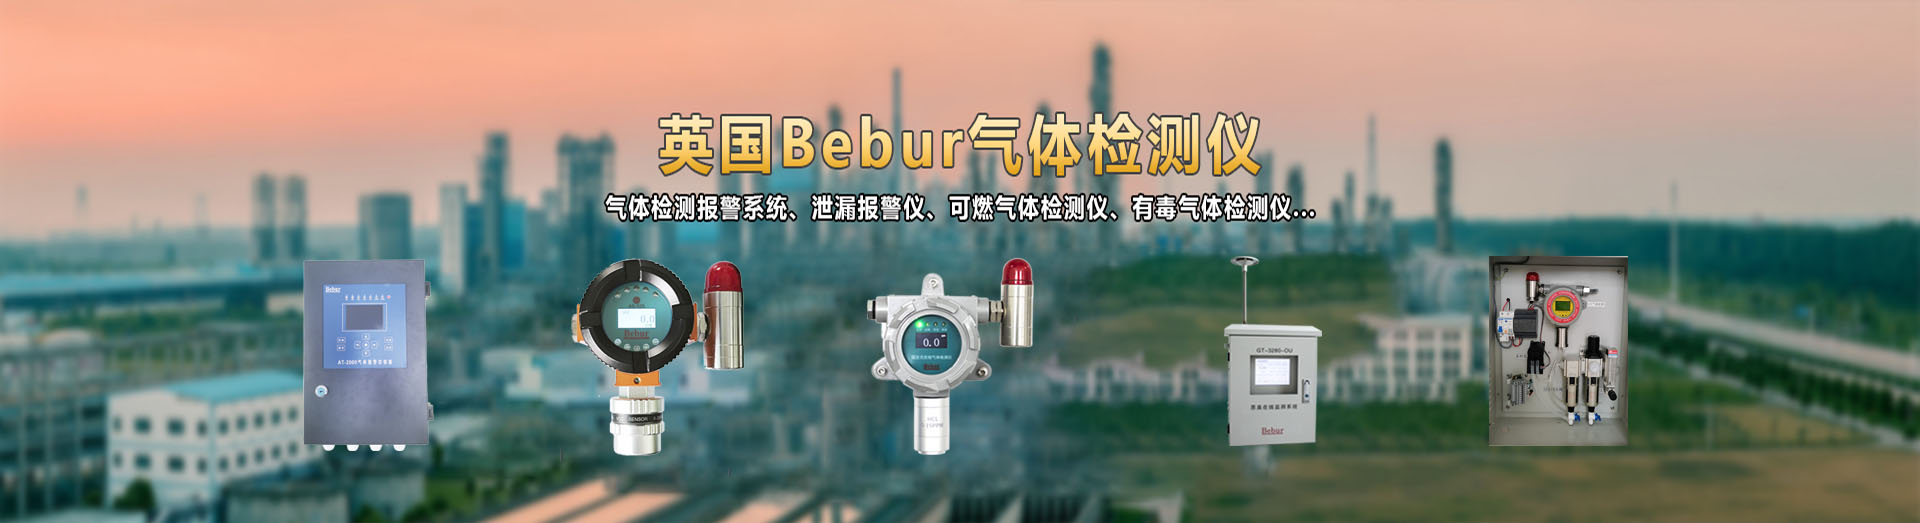 英国Bebur品牌丙烷气体探测器系列产品